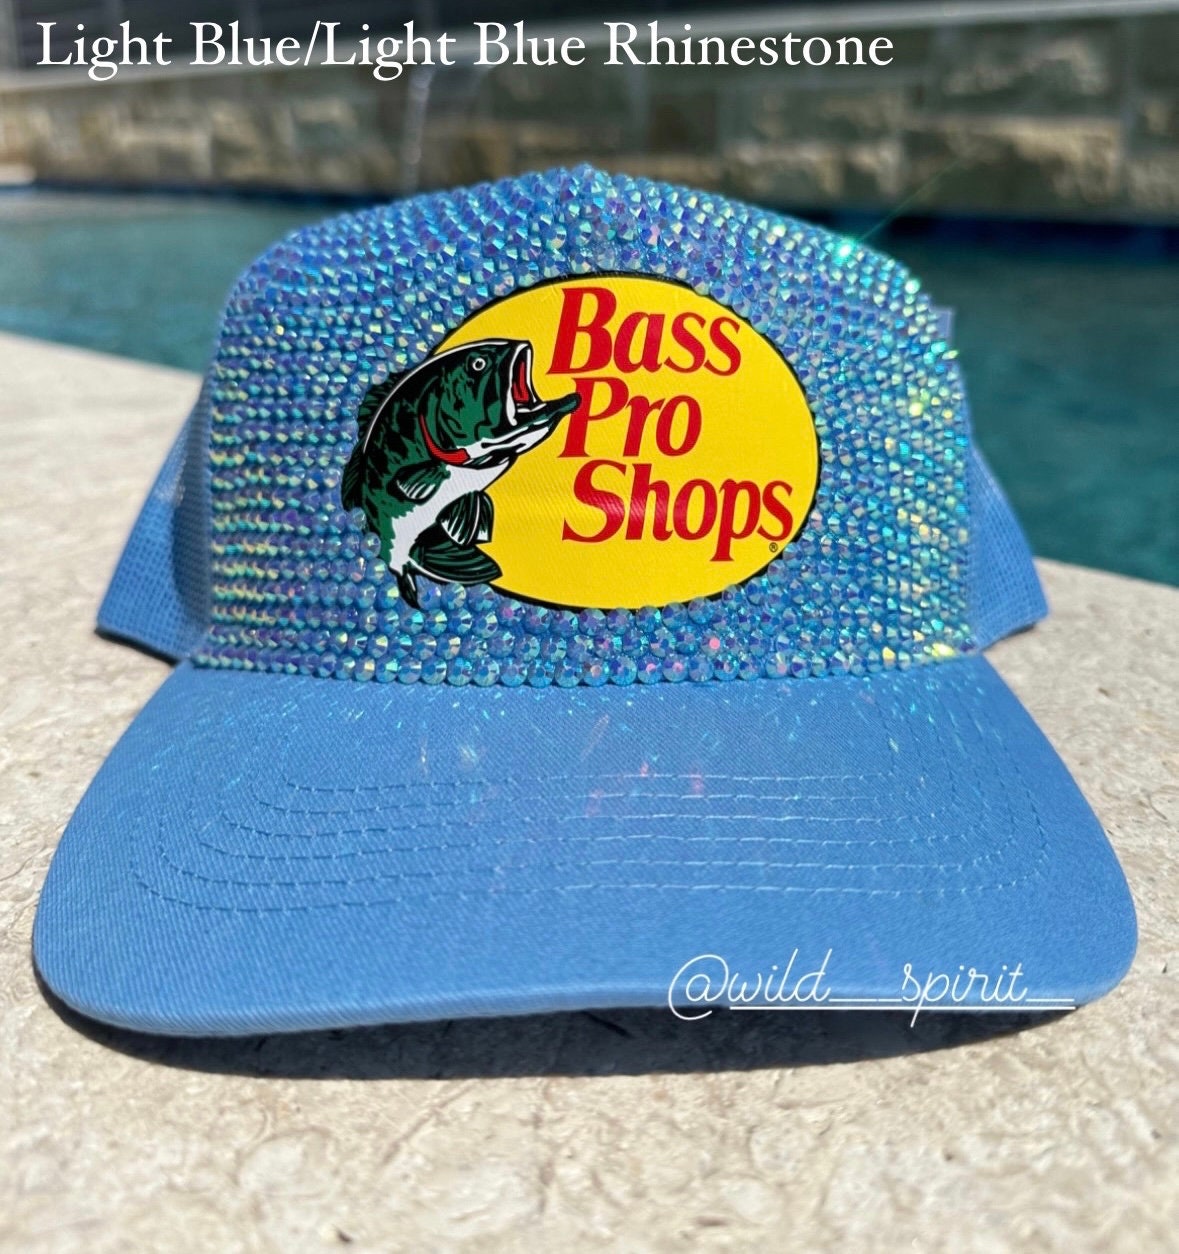 Bass Pro Shop Cap Rhinestone Cap Customize Cap Mesh Caps Ladies